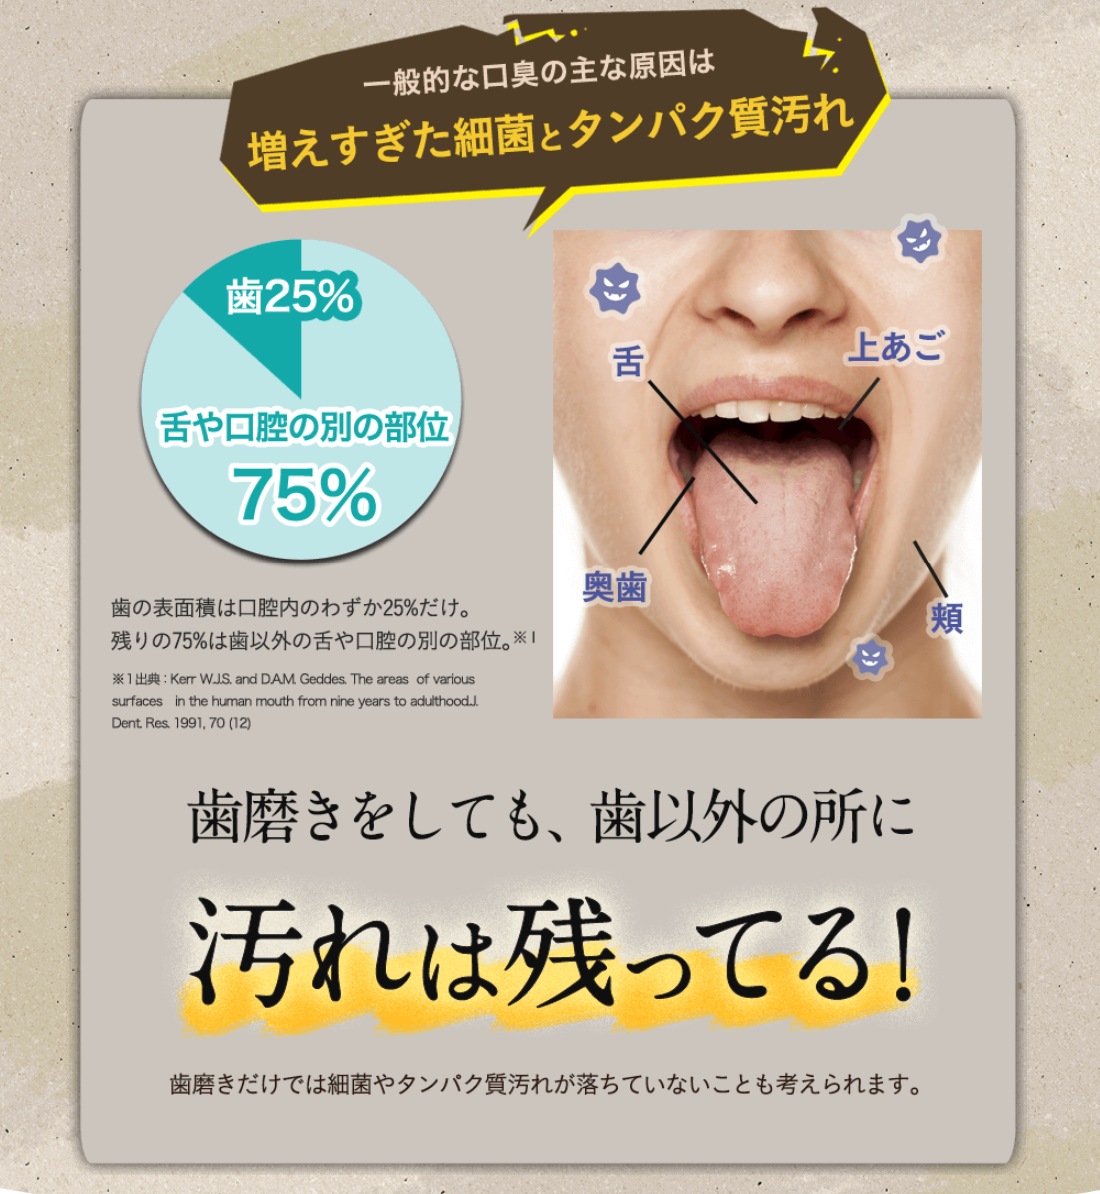 女性が口を開けて、舌を出して、歯磨きをしても汚れが残っていることを解説する